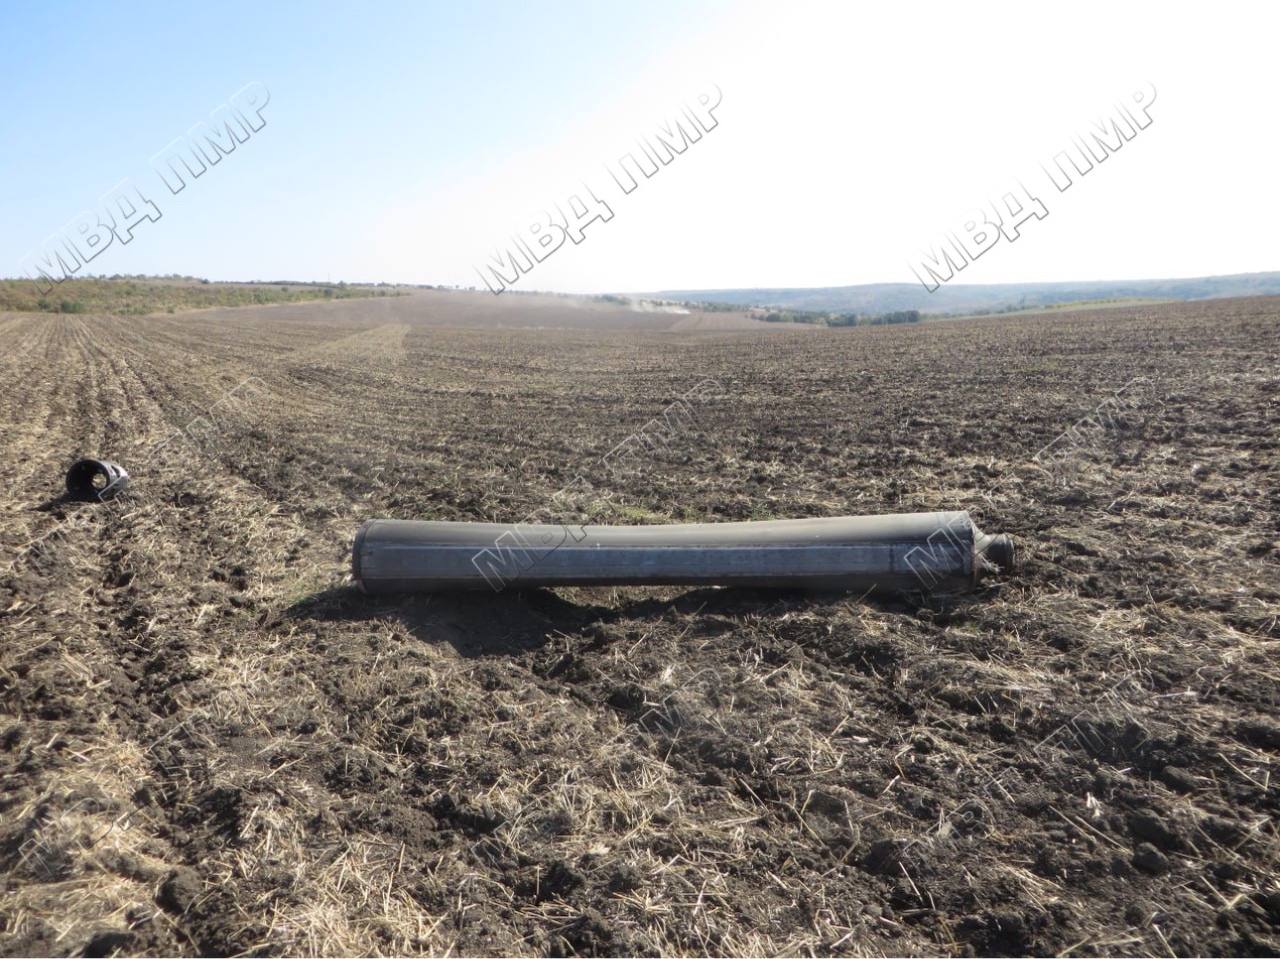 (ФОТО) МВД Приднестровья опубликовало фото обломков ракеты, найденных в селе Гыска